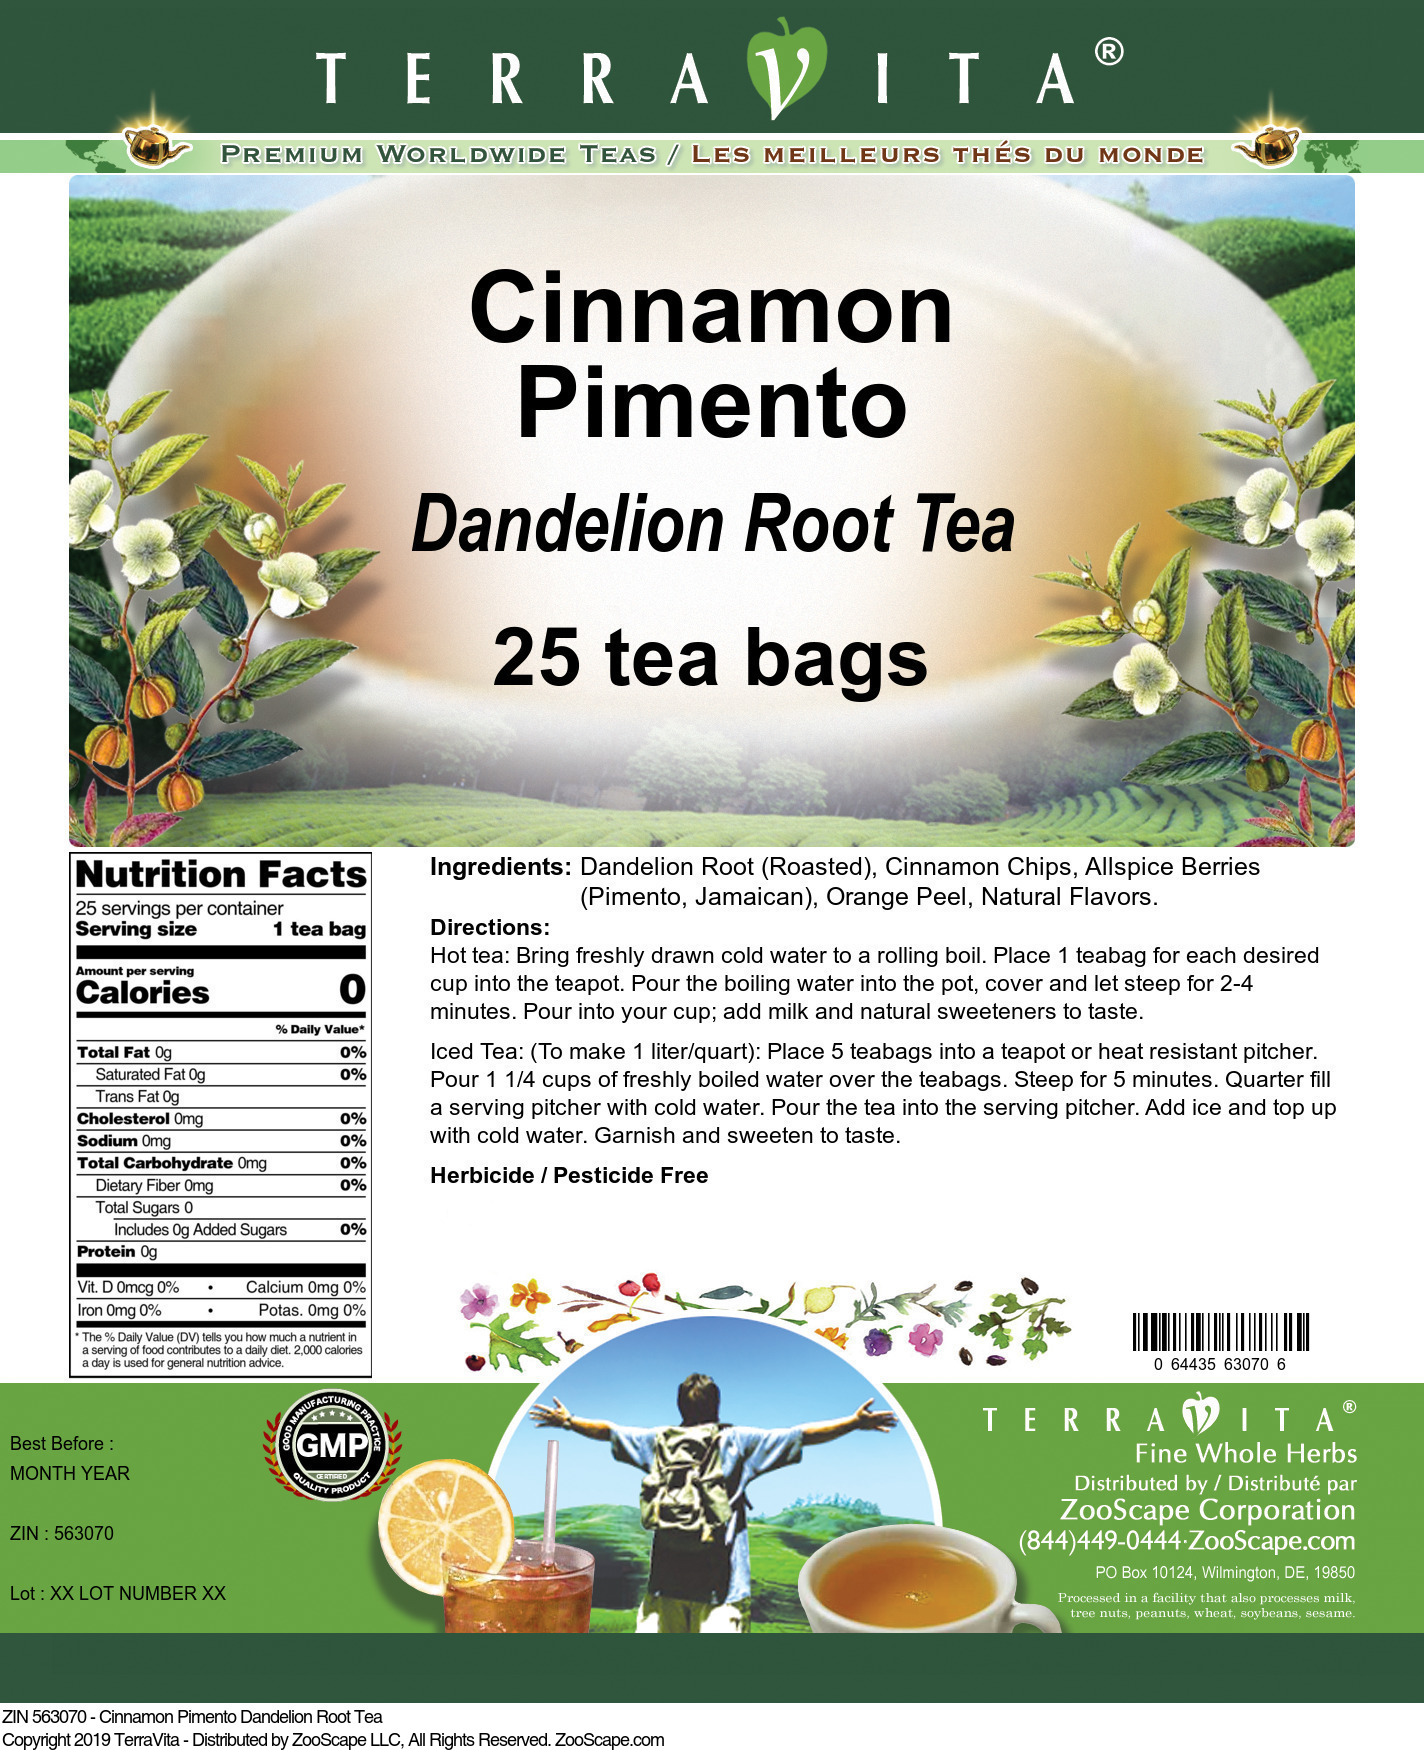 Cinnamon Pimento Dandelion Root Tea - Label